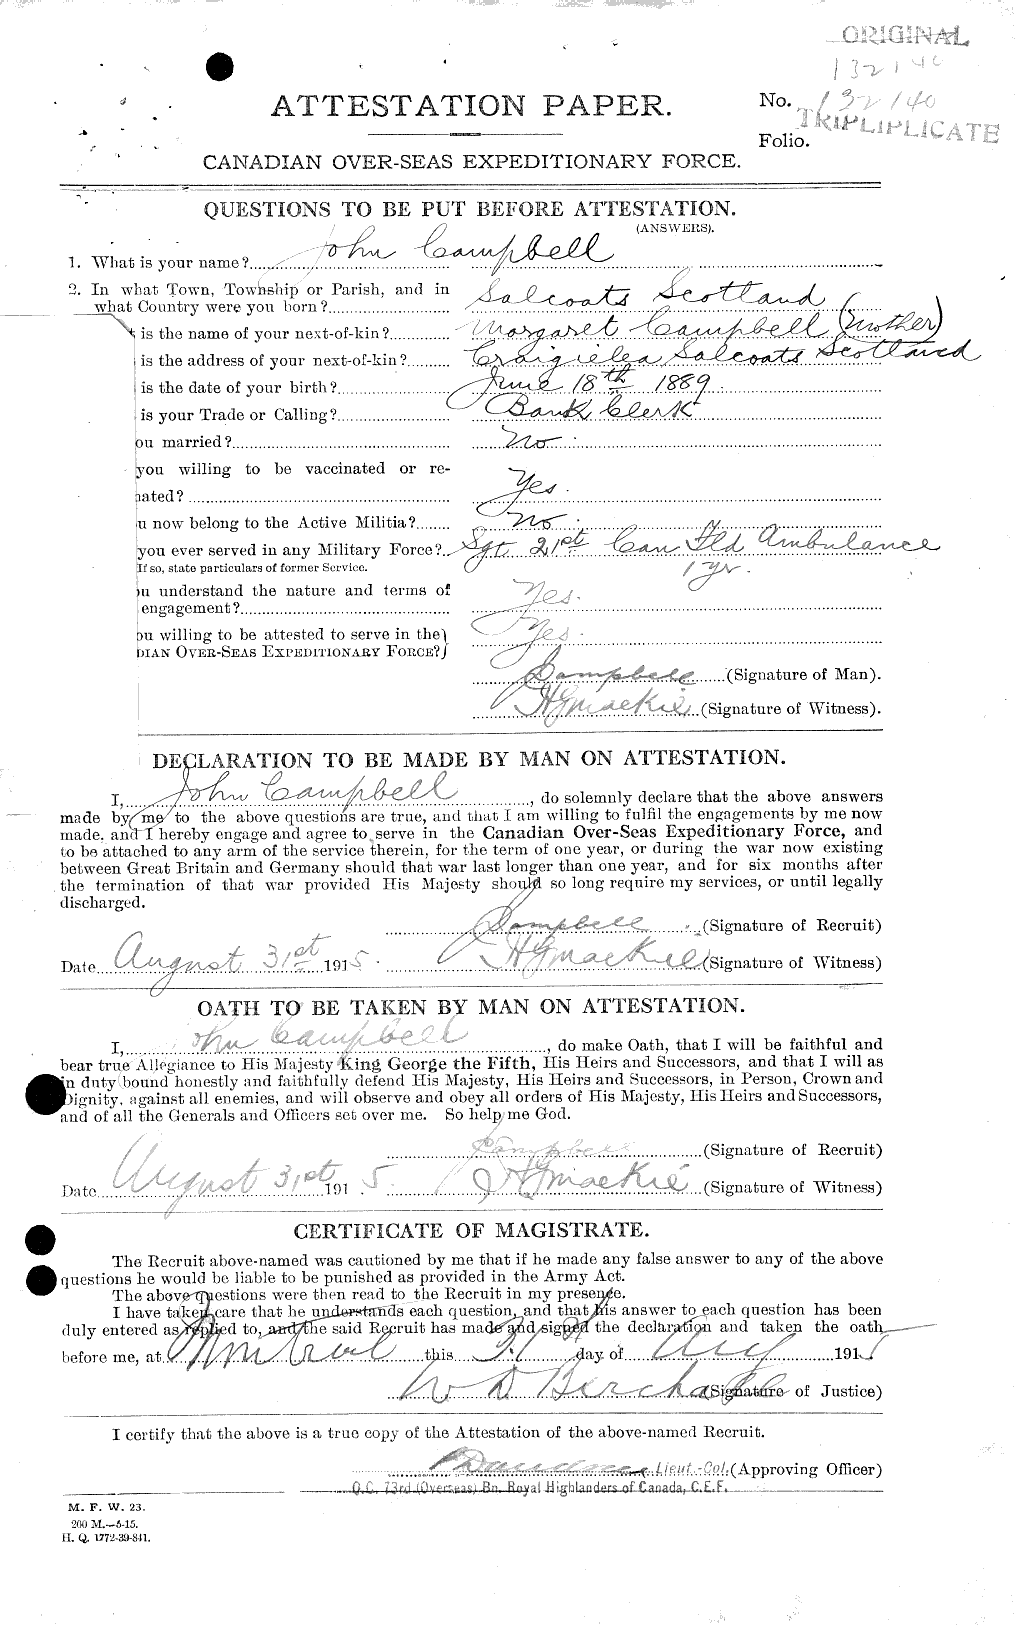 Dossiers du Personnel de la Première Guerre mondiale - CEC 006811a